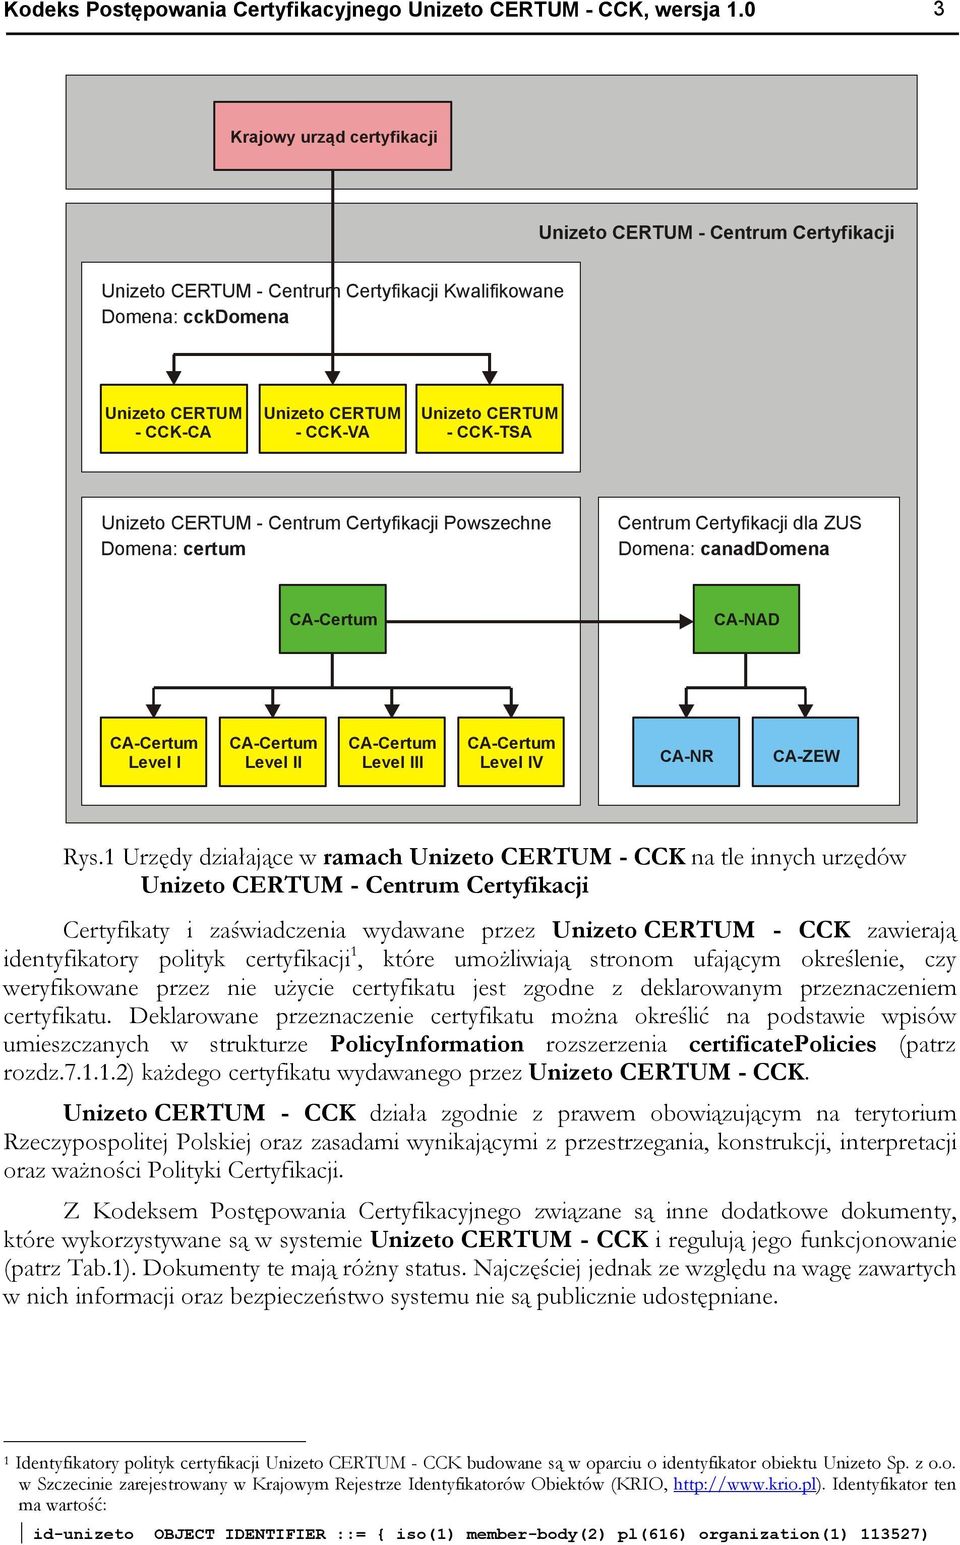 CERTUM - CCK-TSA Unizeto CERTUM - Centrum Certyfikacji Powszechne Domena: certum Centrum Certyfikacji dla ZUS Domena: canaddomena CA-Certum CA-NAD CA-Certum Level I CA-Certum Level II CA-Certum Level